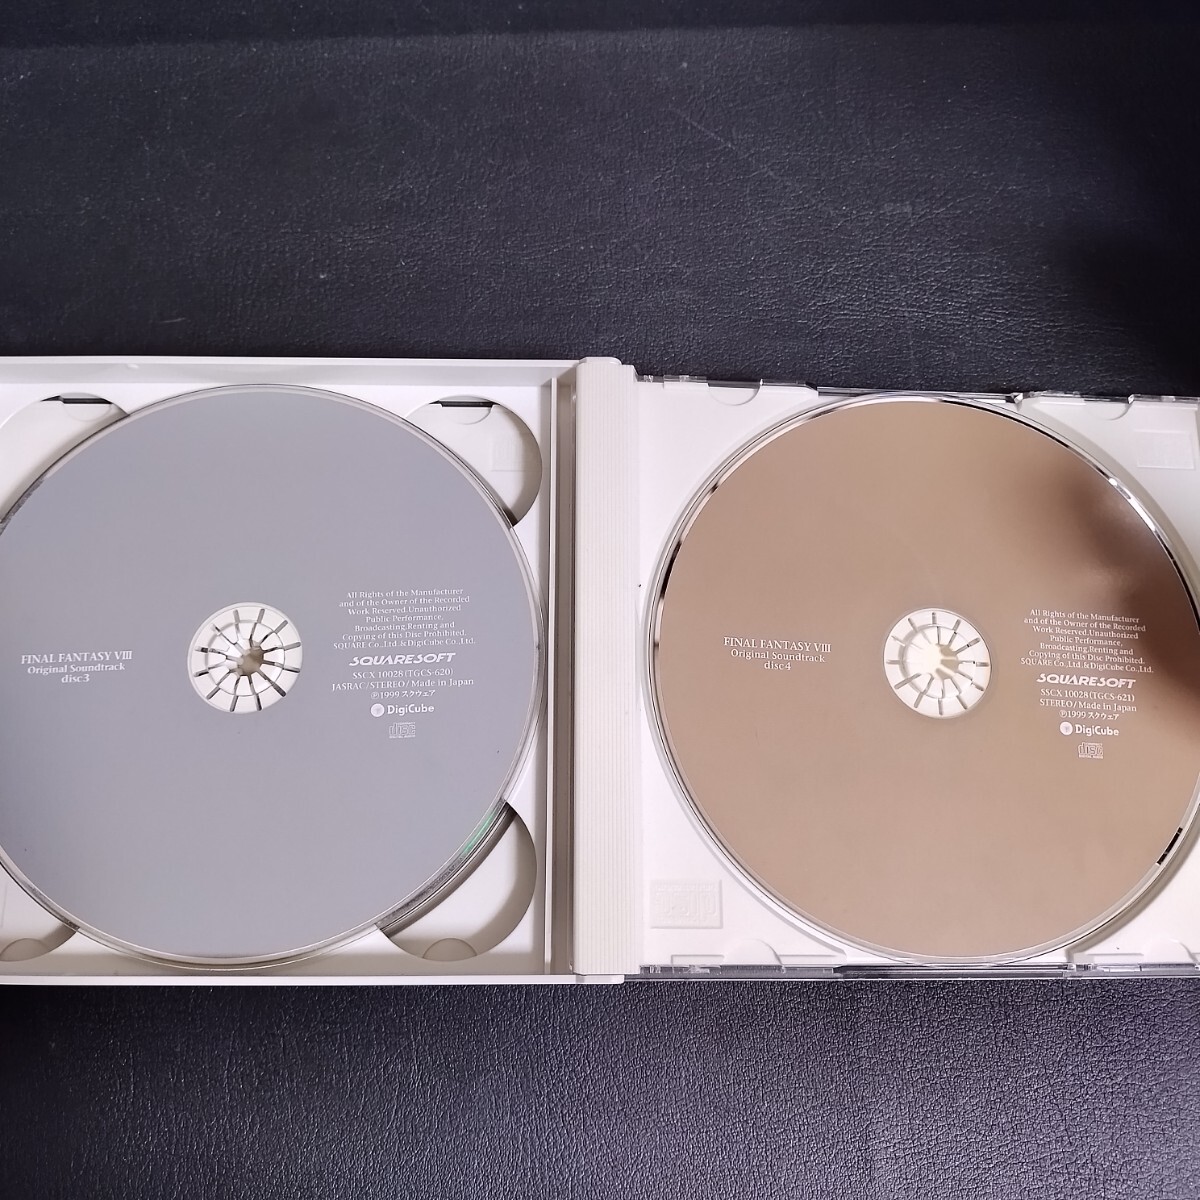 [FINAL FANTASY VIII] Final Fantasy оригинал саундтрек [ обычная версия ] CD 4 листов комплект музыкальное сопровождение игр полки A